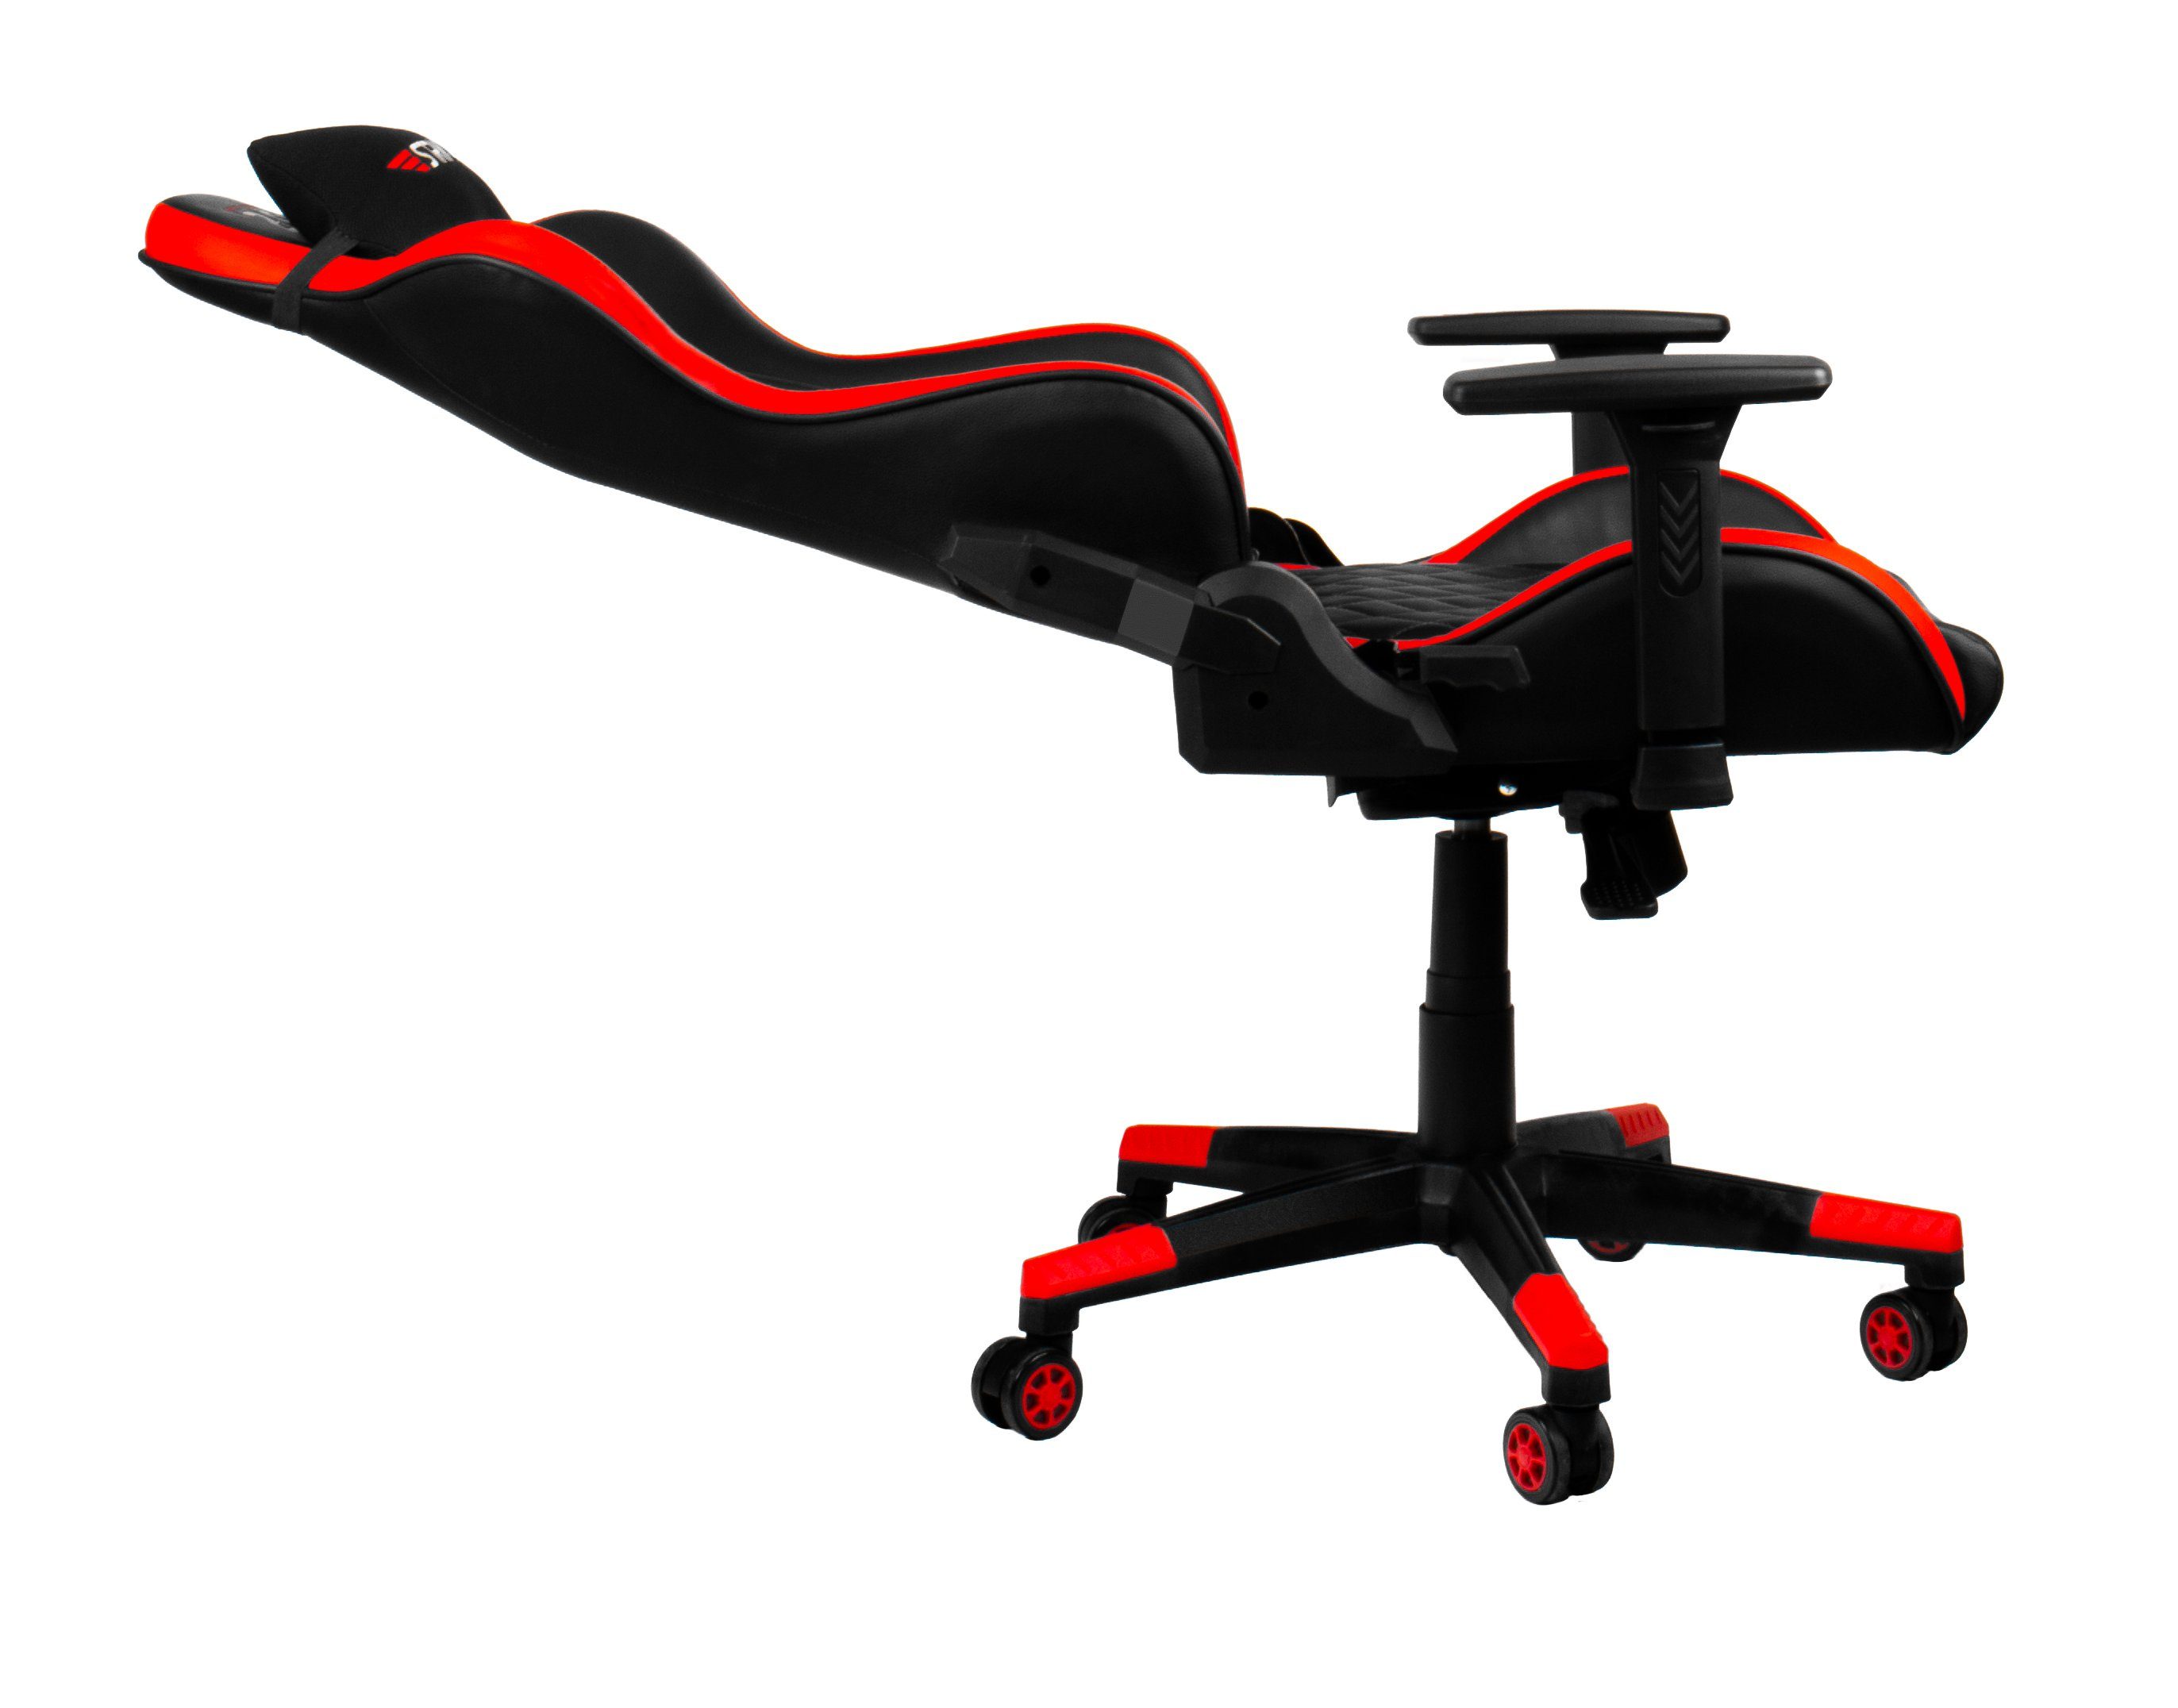 Hyrican Gaming-Stuhl "Striker Code Red XL" ergonomischer Gamingstuhl,Schreibtischstuhl